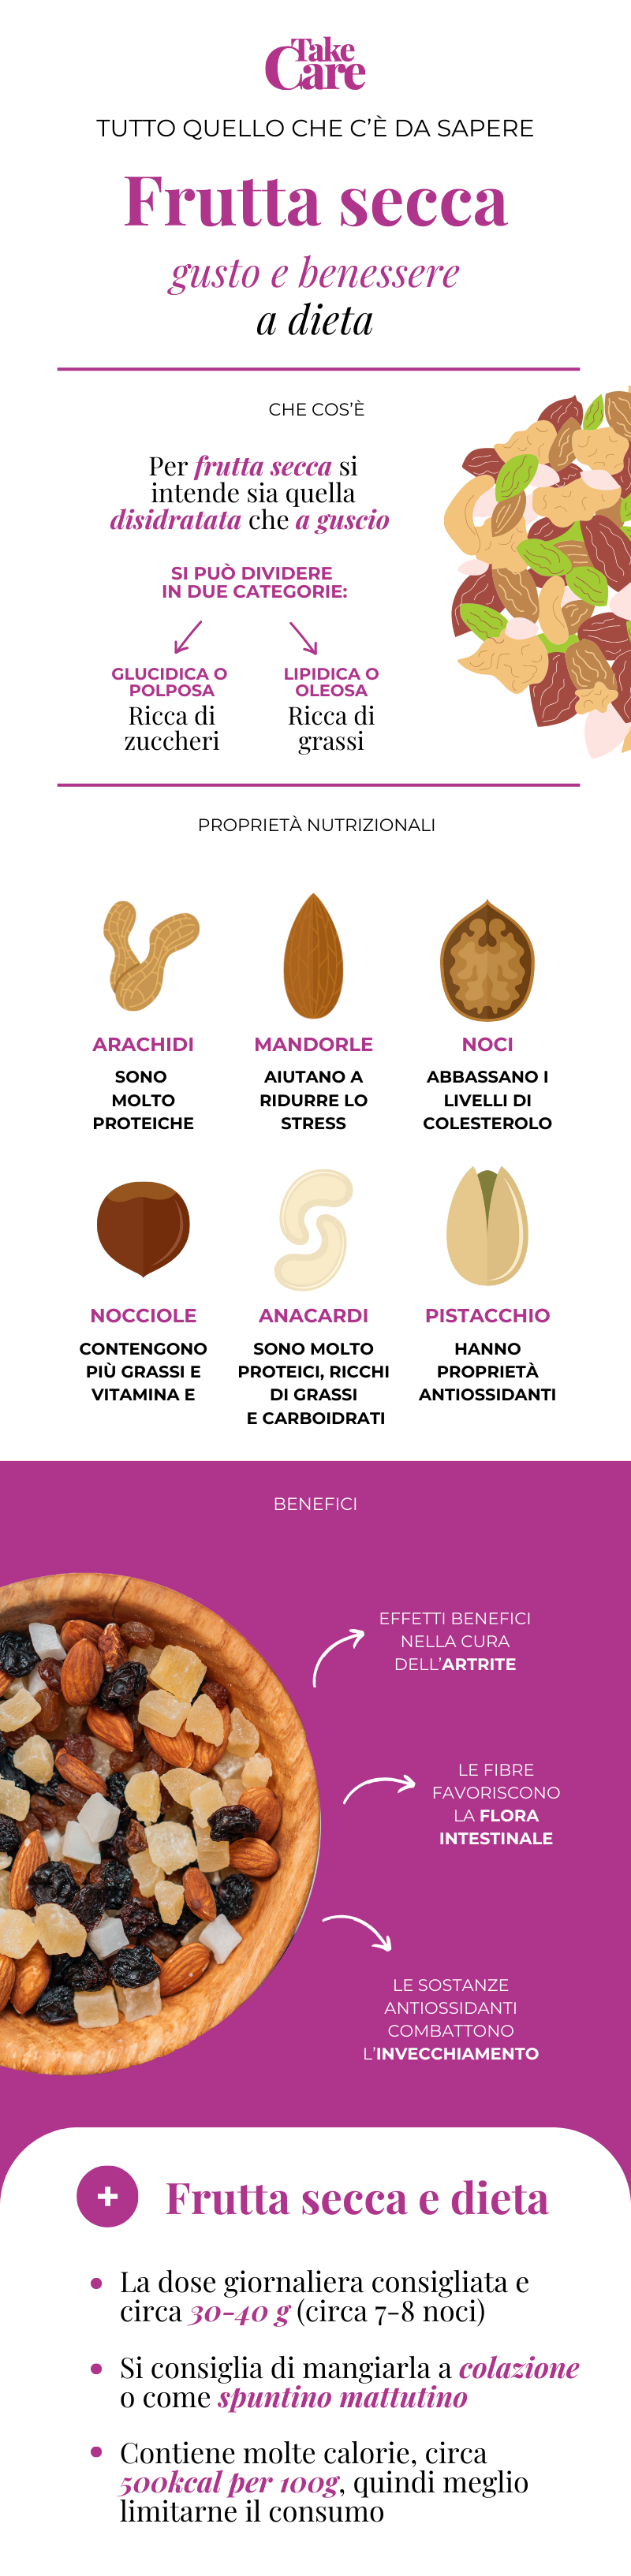 Infografica sulla frutta secca